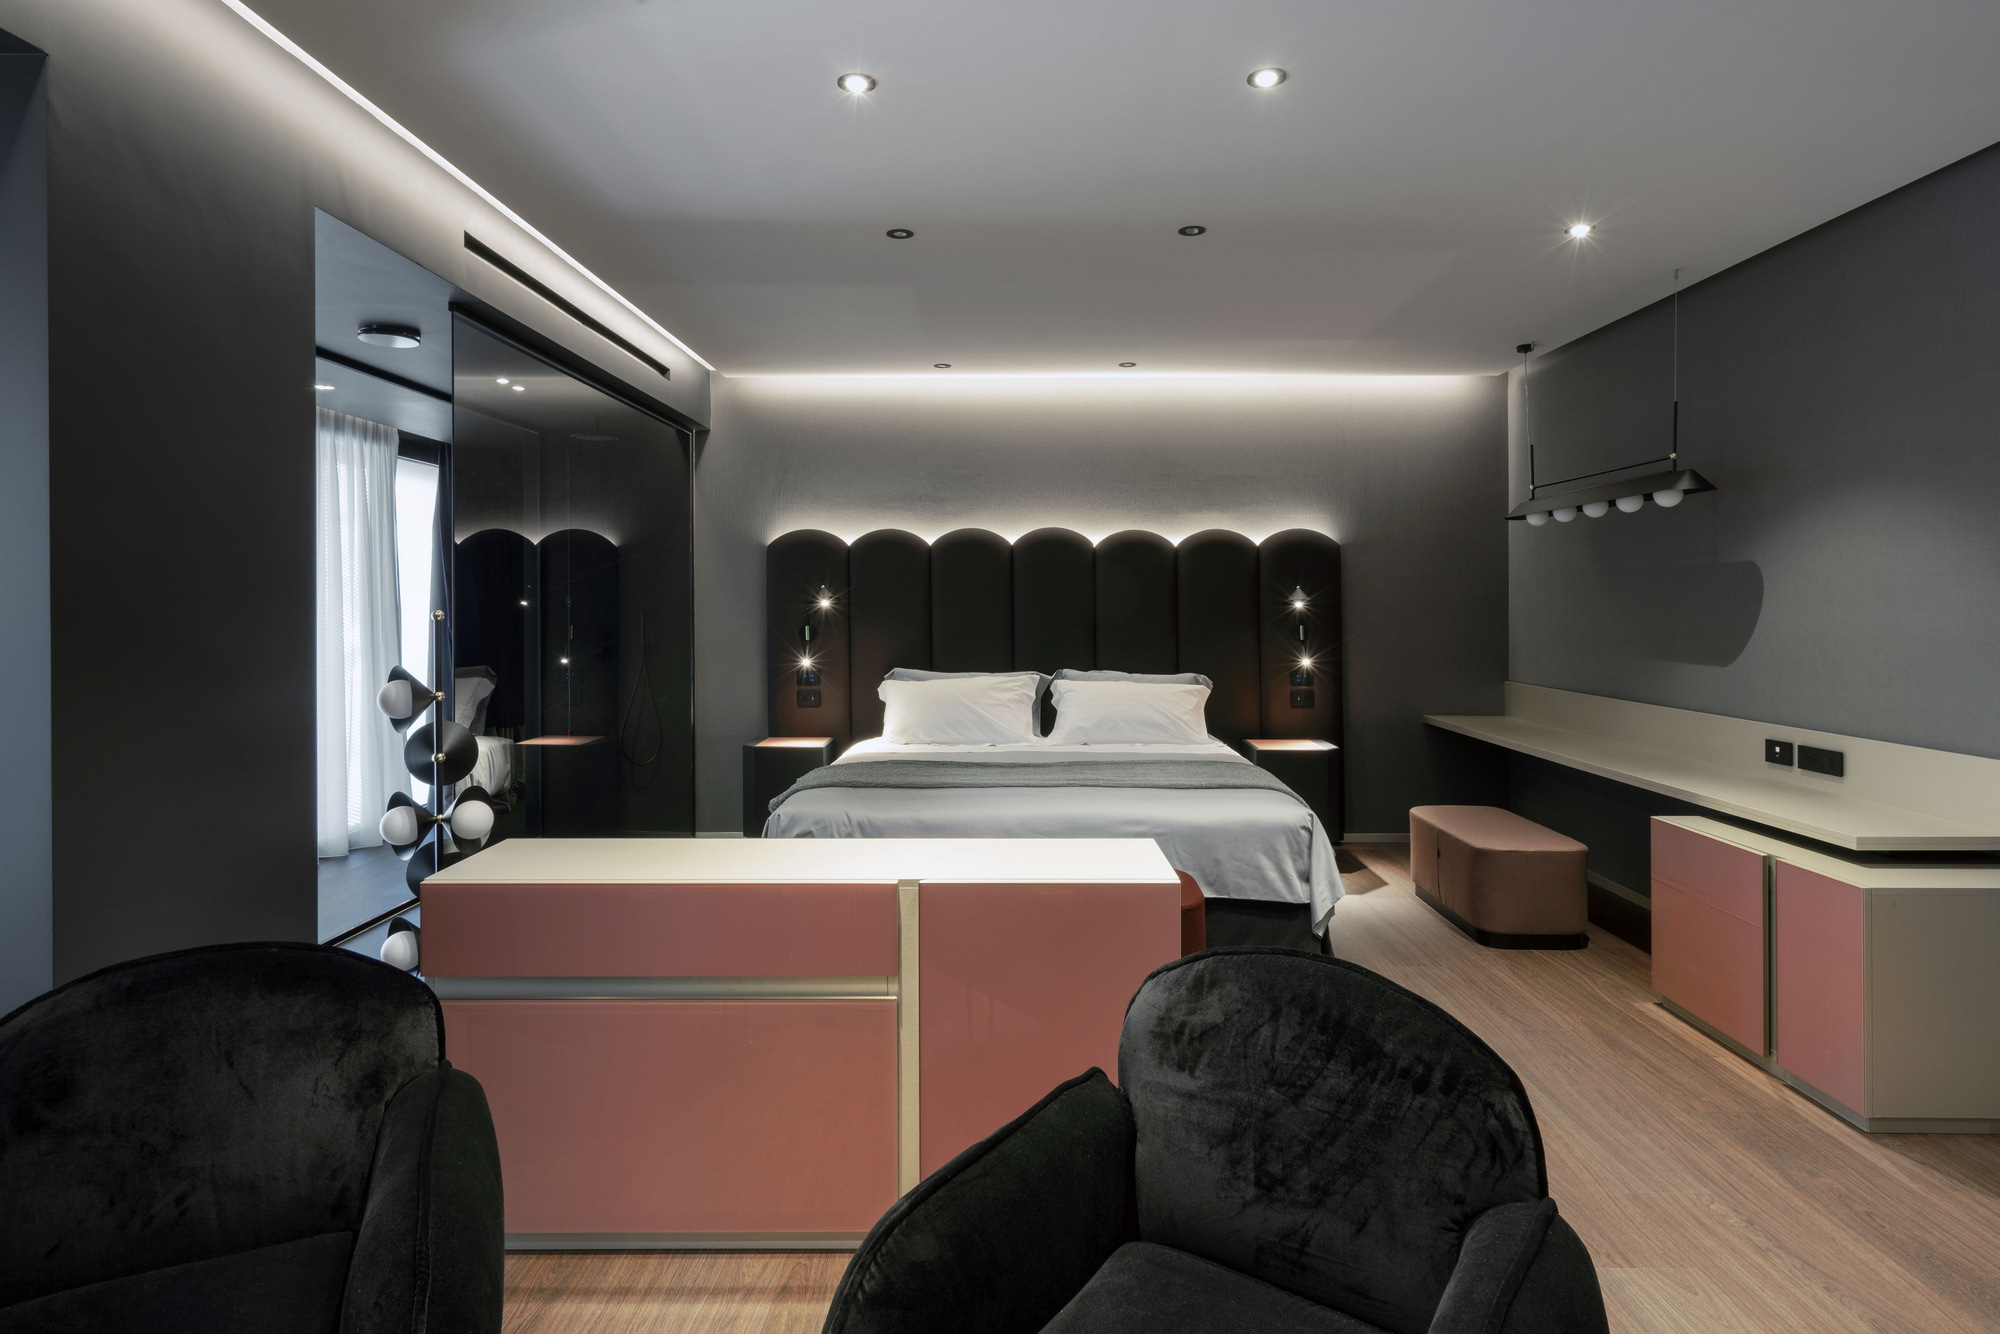 图片[22]|拉套房酒店马特拉|ART-Arrakis | 建筑室内设计的创新与灵感